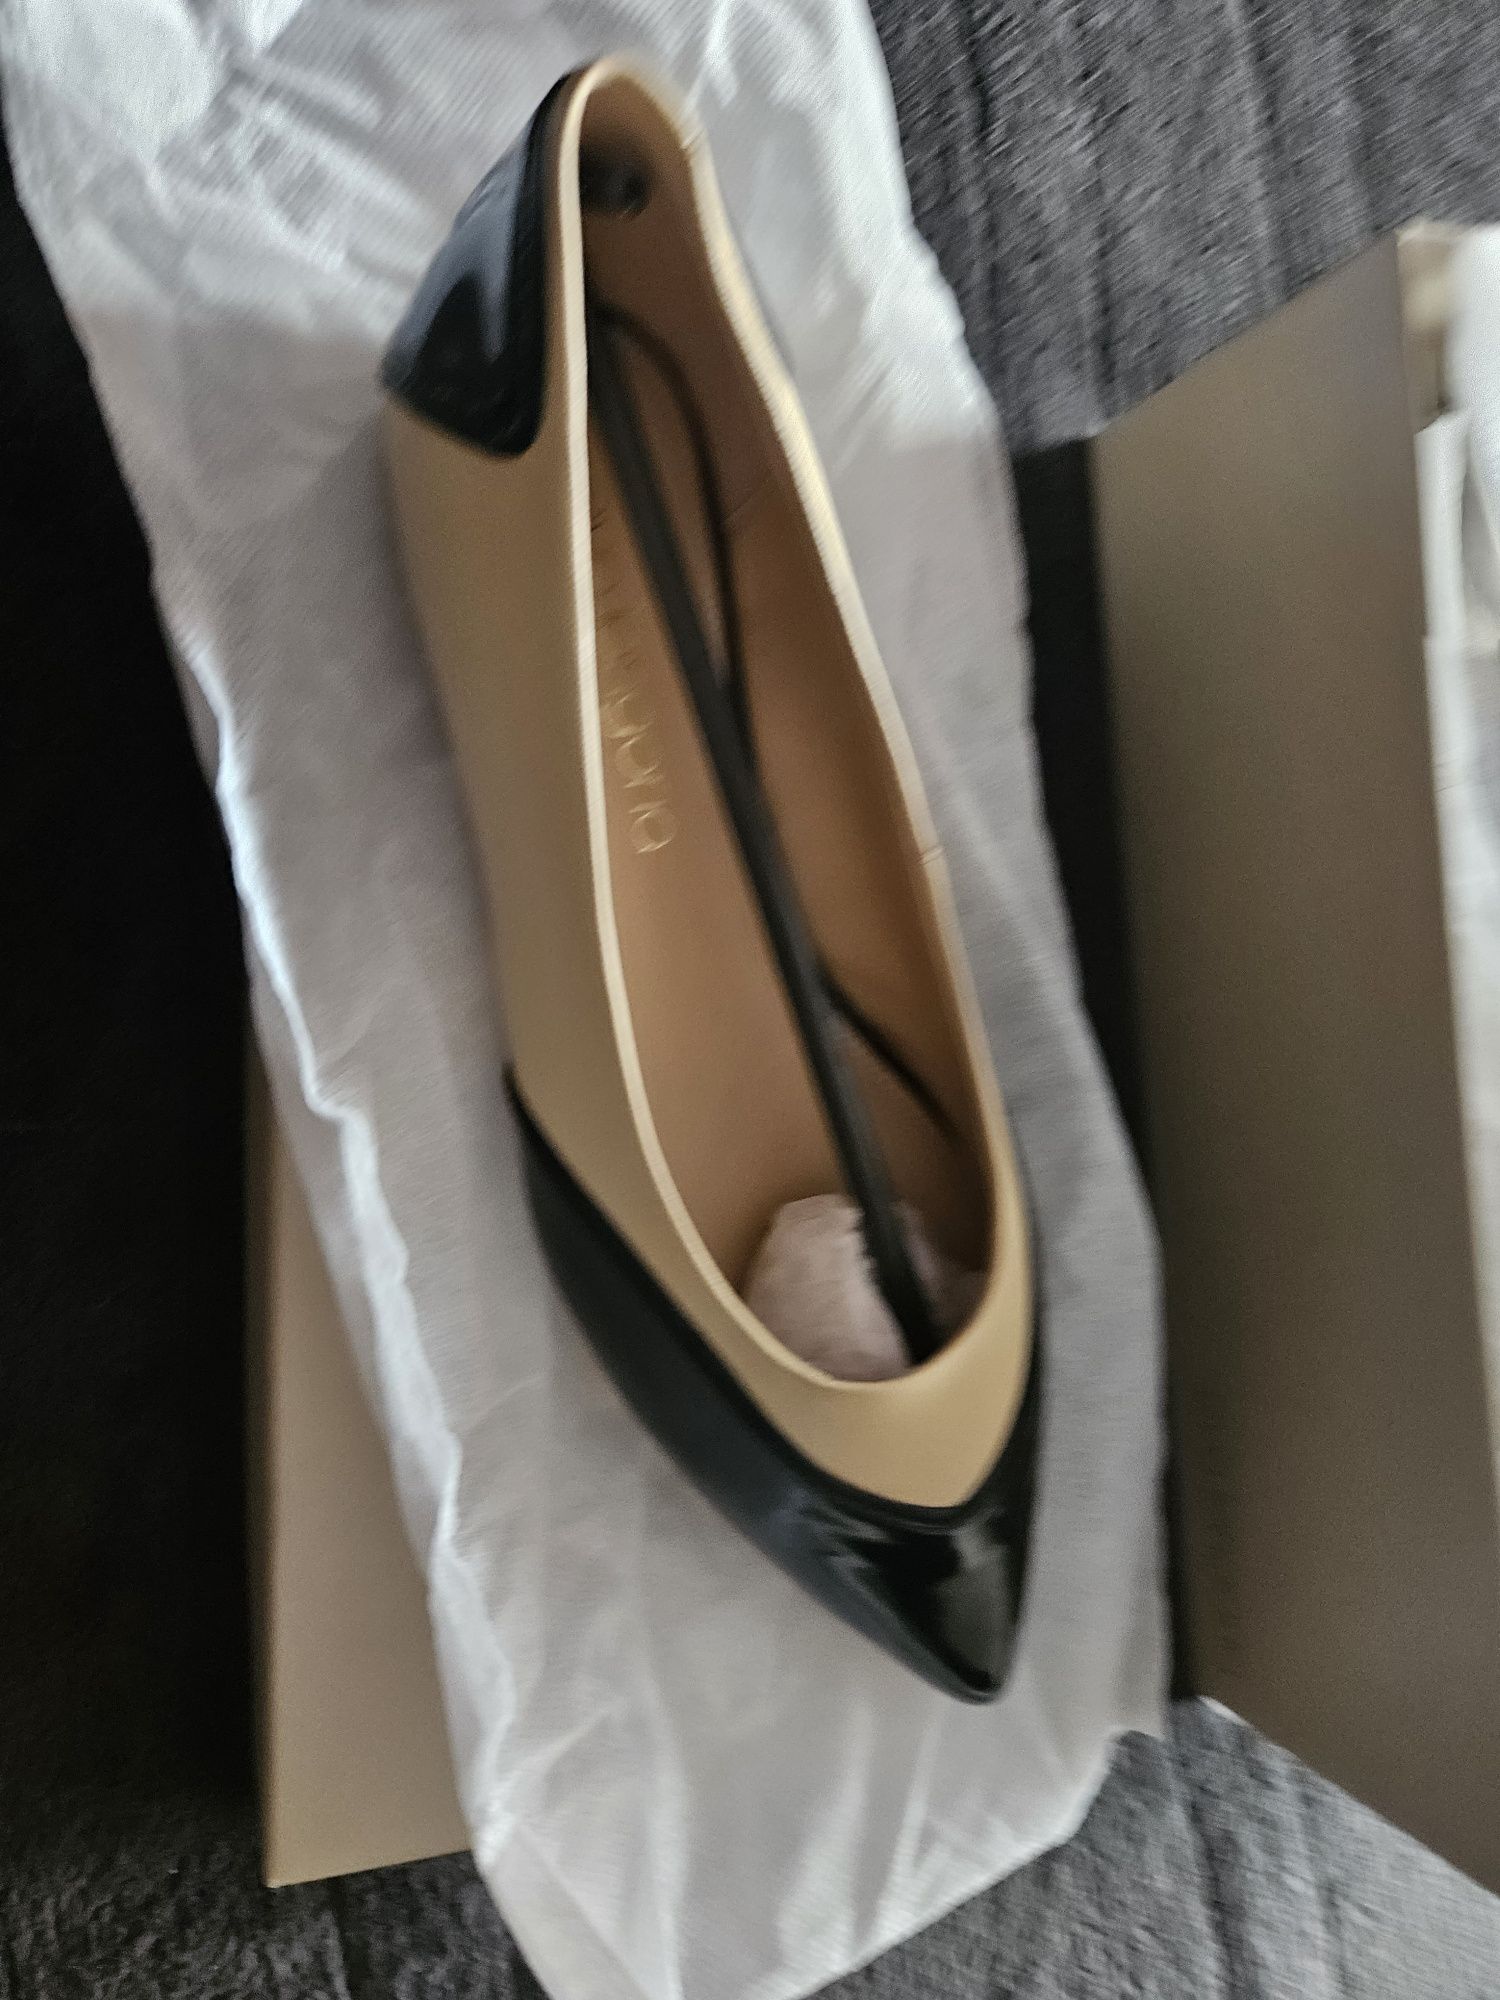 Дамски Обувки 100% естествена кожа  Eva Longoria